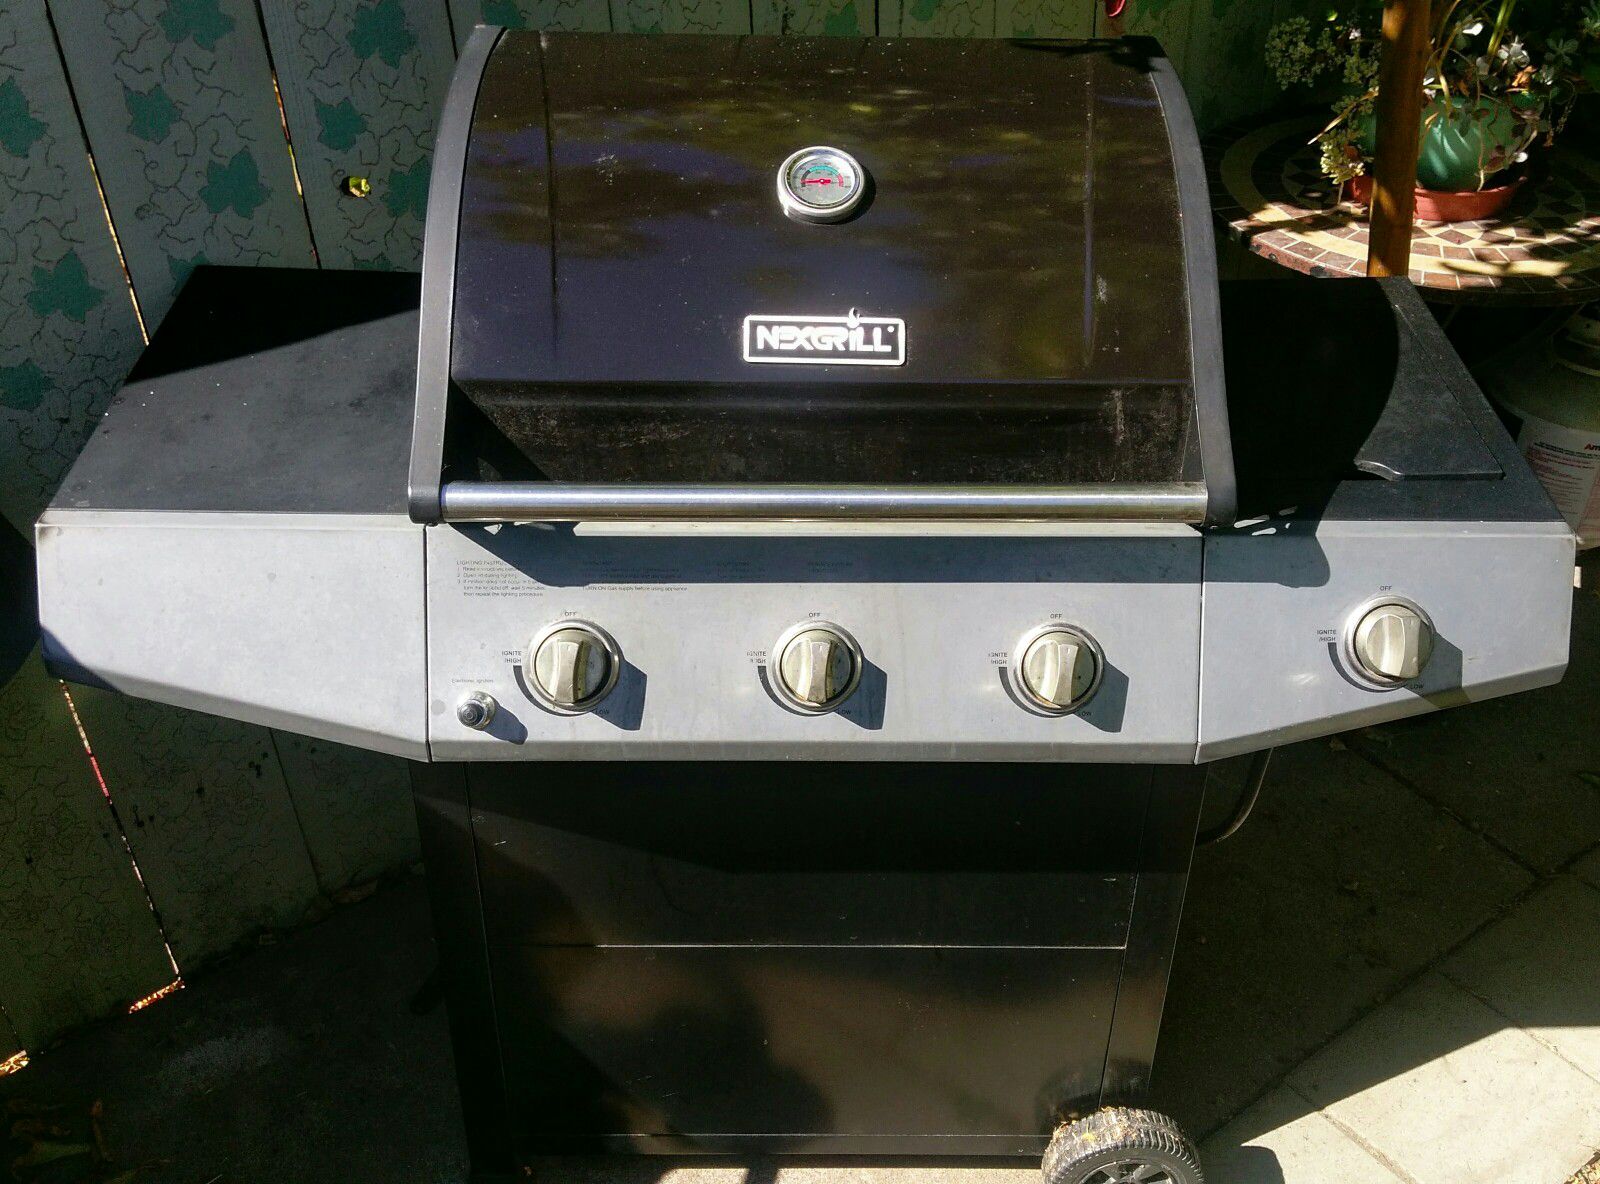 NexGrill 3 burner gas BBQ grill with side burner